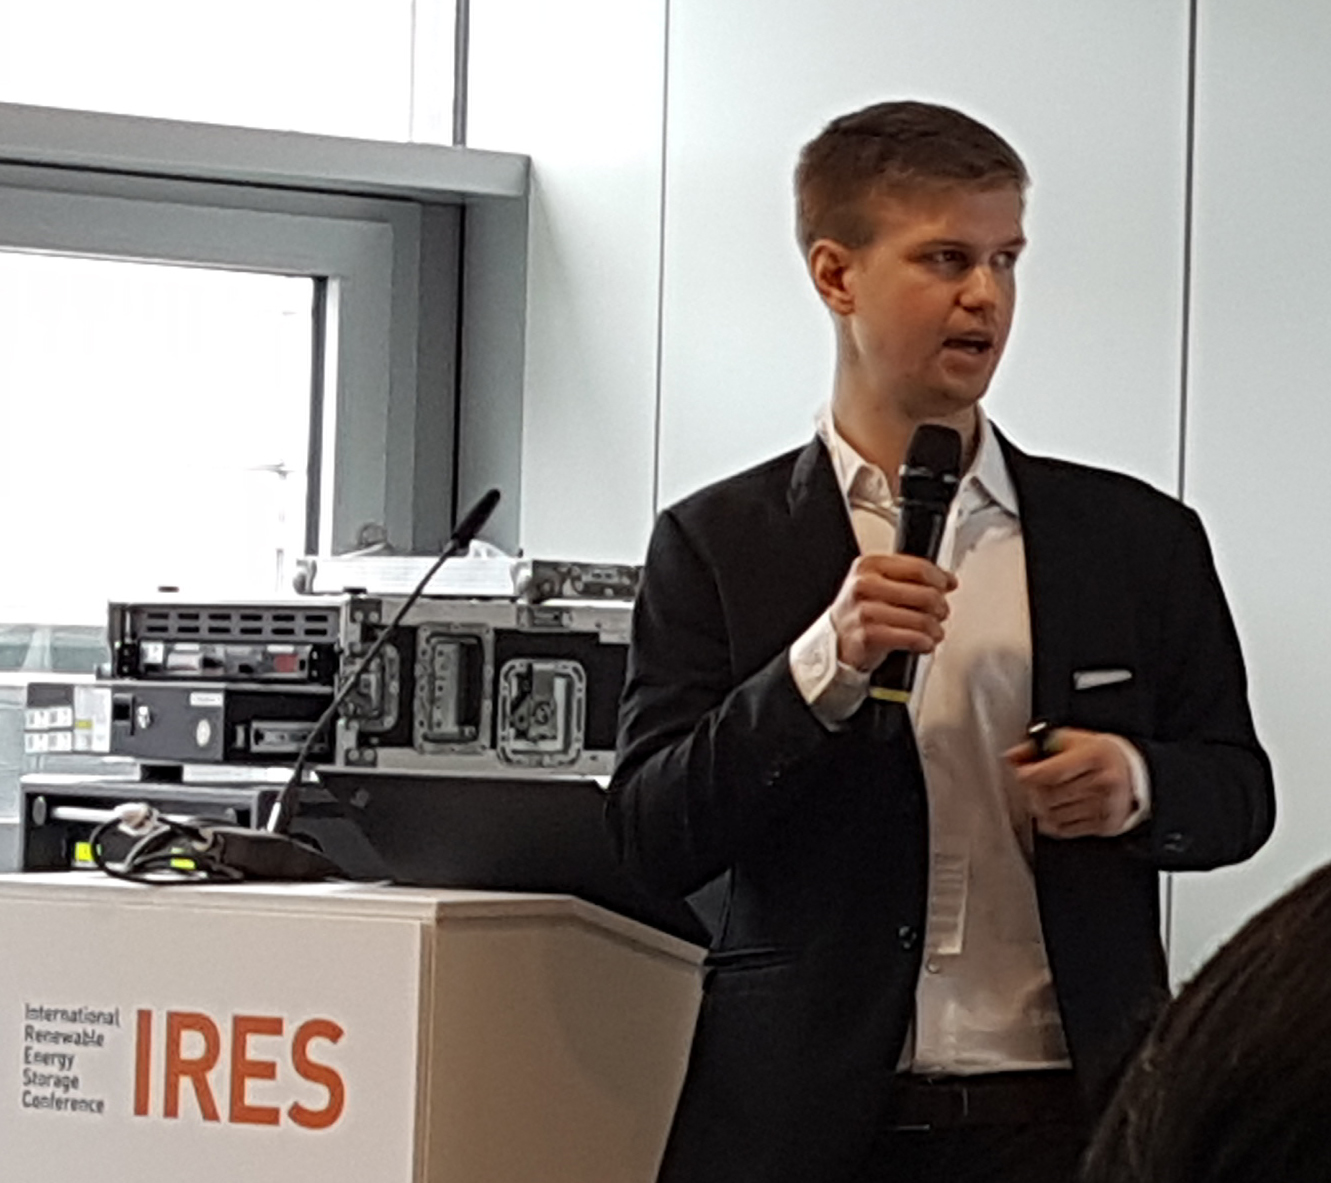 Louis Bahner aus dem Geschäftsbereich Energie bei Tractebel präsentiert die Forschungsergebnisse zur Energiespeicherung auf der Energiekonferenz IRES.  